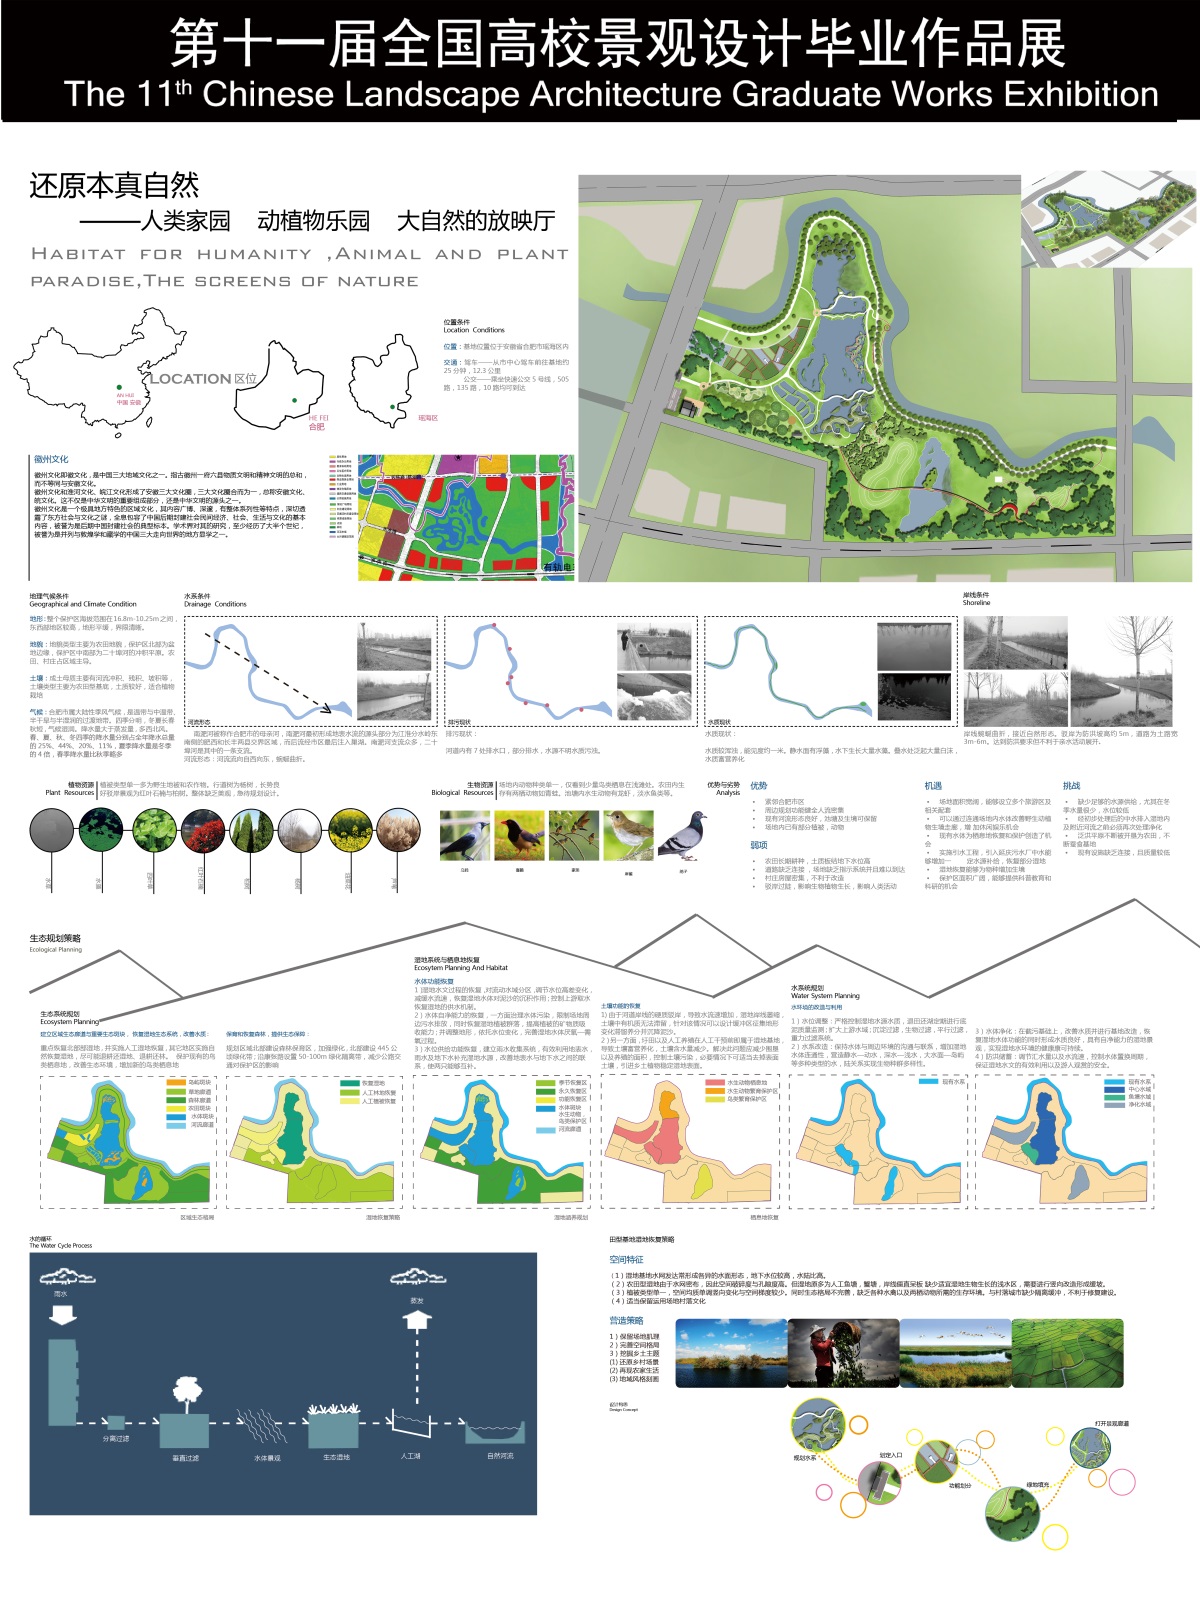 二十埠河湿地生态修复规划概念性设计-1